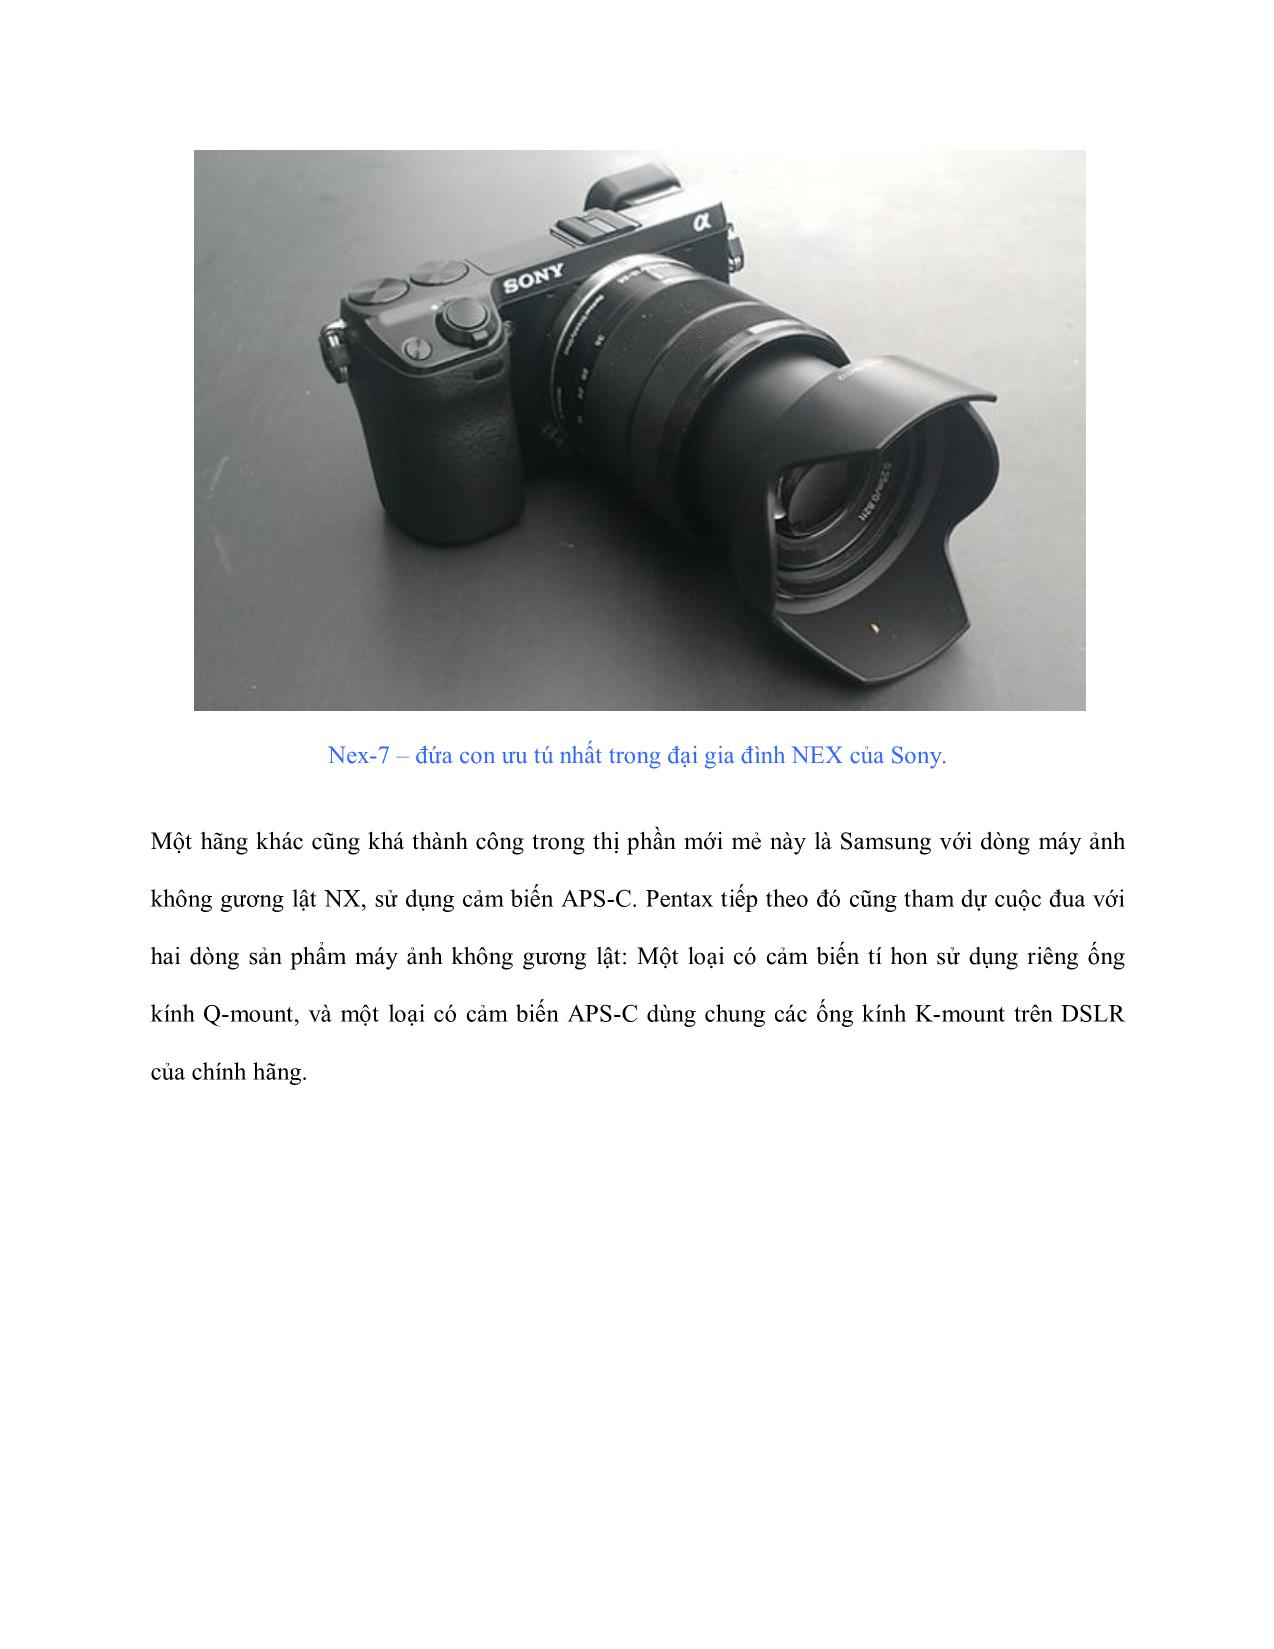 Máy ảnh không gương lật - Những điều cần biết (Phần I) trang 7